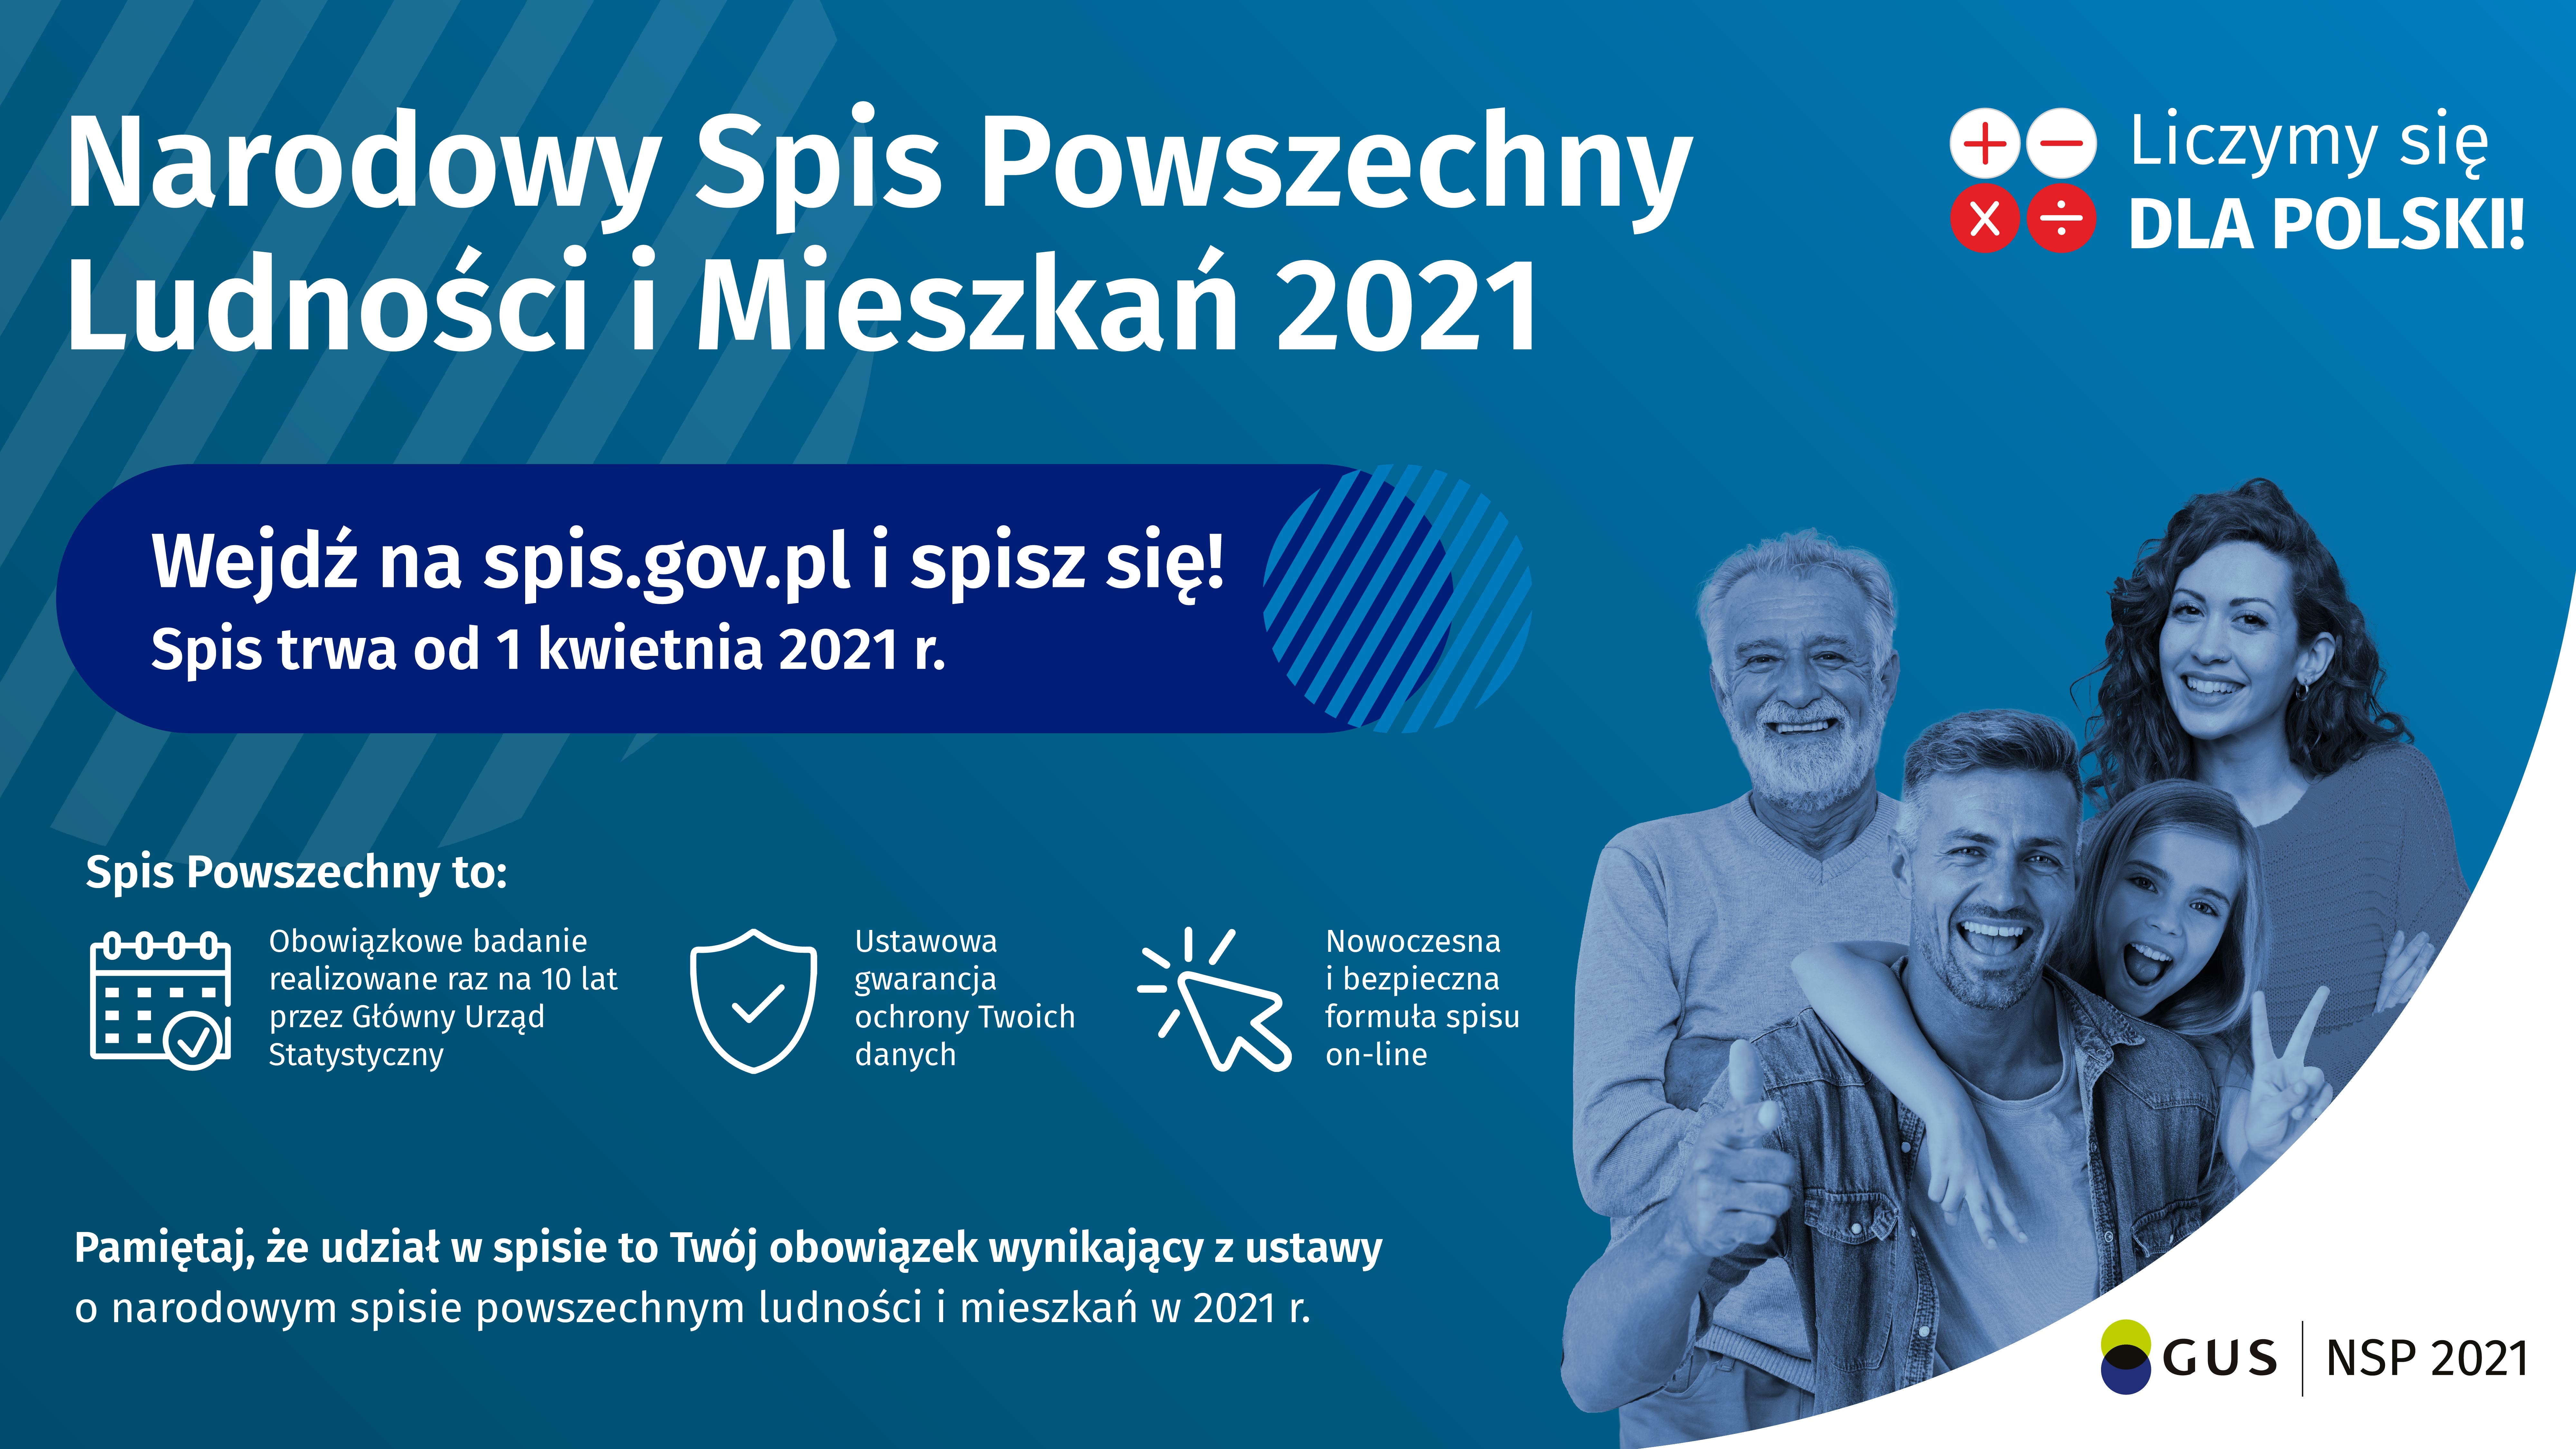 Narodowy Spis Powszechny Ludności i Mieszkań 2021. Wejdź na stronę: spis.gov.pl i spisz się! Spis trwa od 1 kwietnia 2021 r.  Spis Powszechny to: obowiązkowe badanie realizowane raz na 10 lat przez Główny Urząd Statystyczny, ustawowa gwarancja ochrony Twoich danych, nowoczesna i bezpieczna formuła spisu on-line. Pamiętaj, że udział w spisie to Twój obowiązek wynikający z ustawy o narodowym spisie powszechnym ludności i mieszkań w 2021 r.  Kliknięcie w element graficzny otworzy stronę internetową: spis.gov.pl (link)